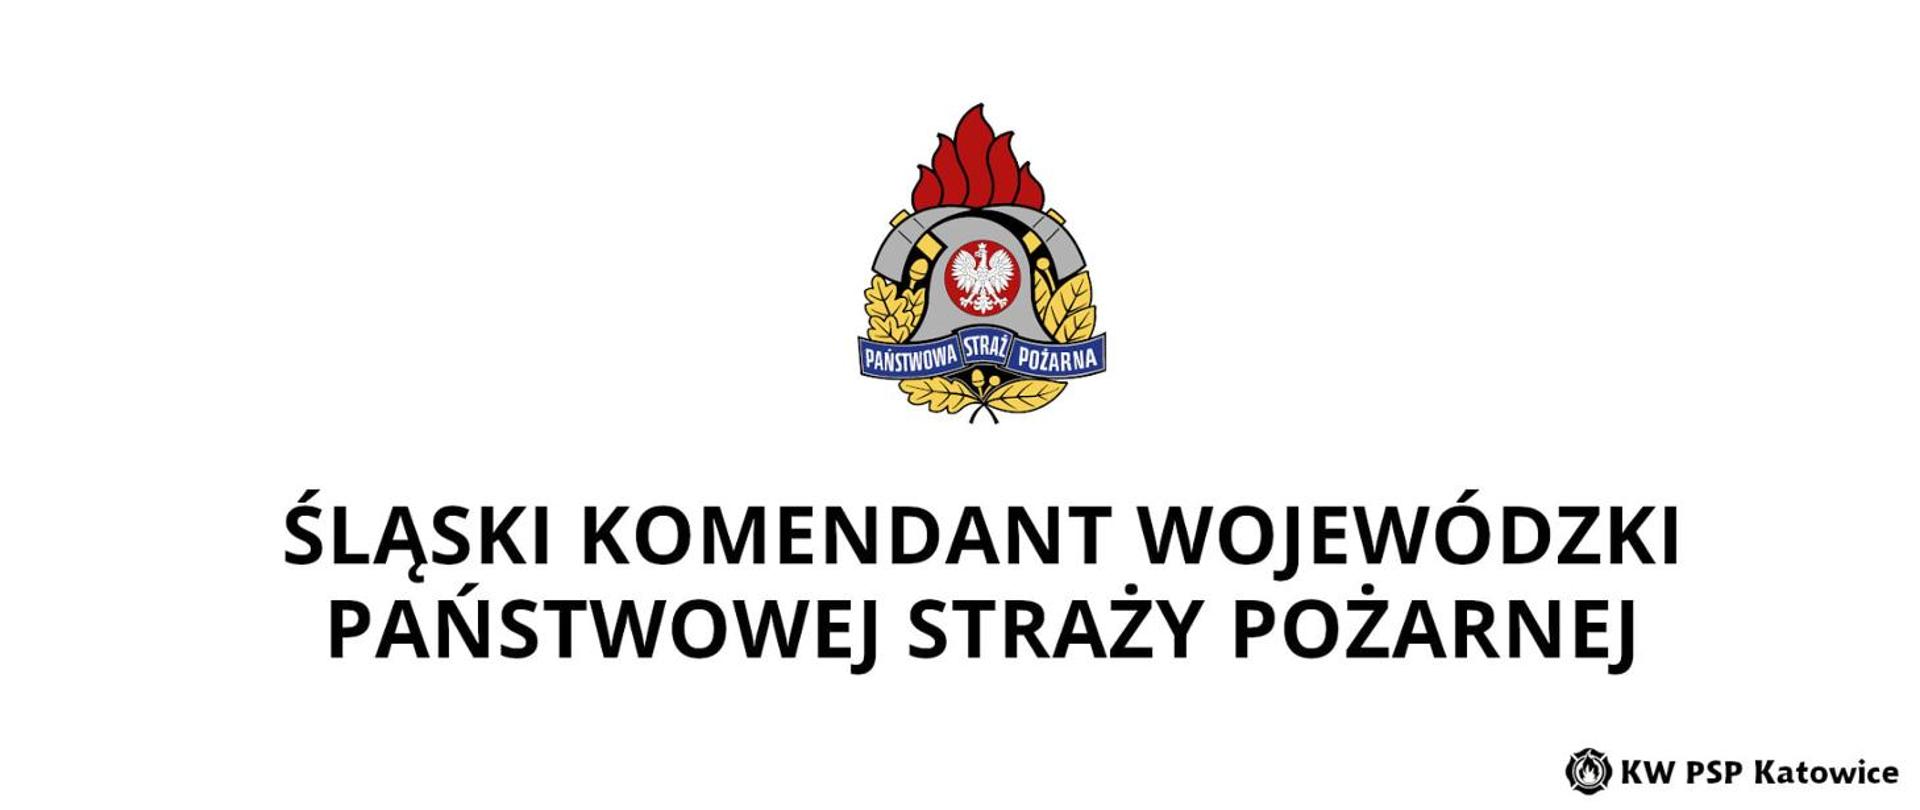 Komenda Wojewódzka Państwowej Straży Pożarnej w Katowicach